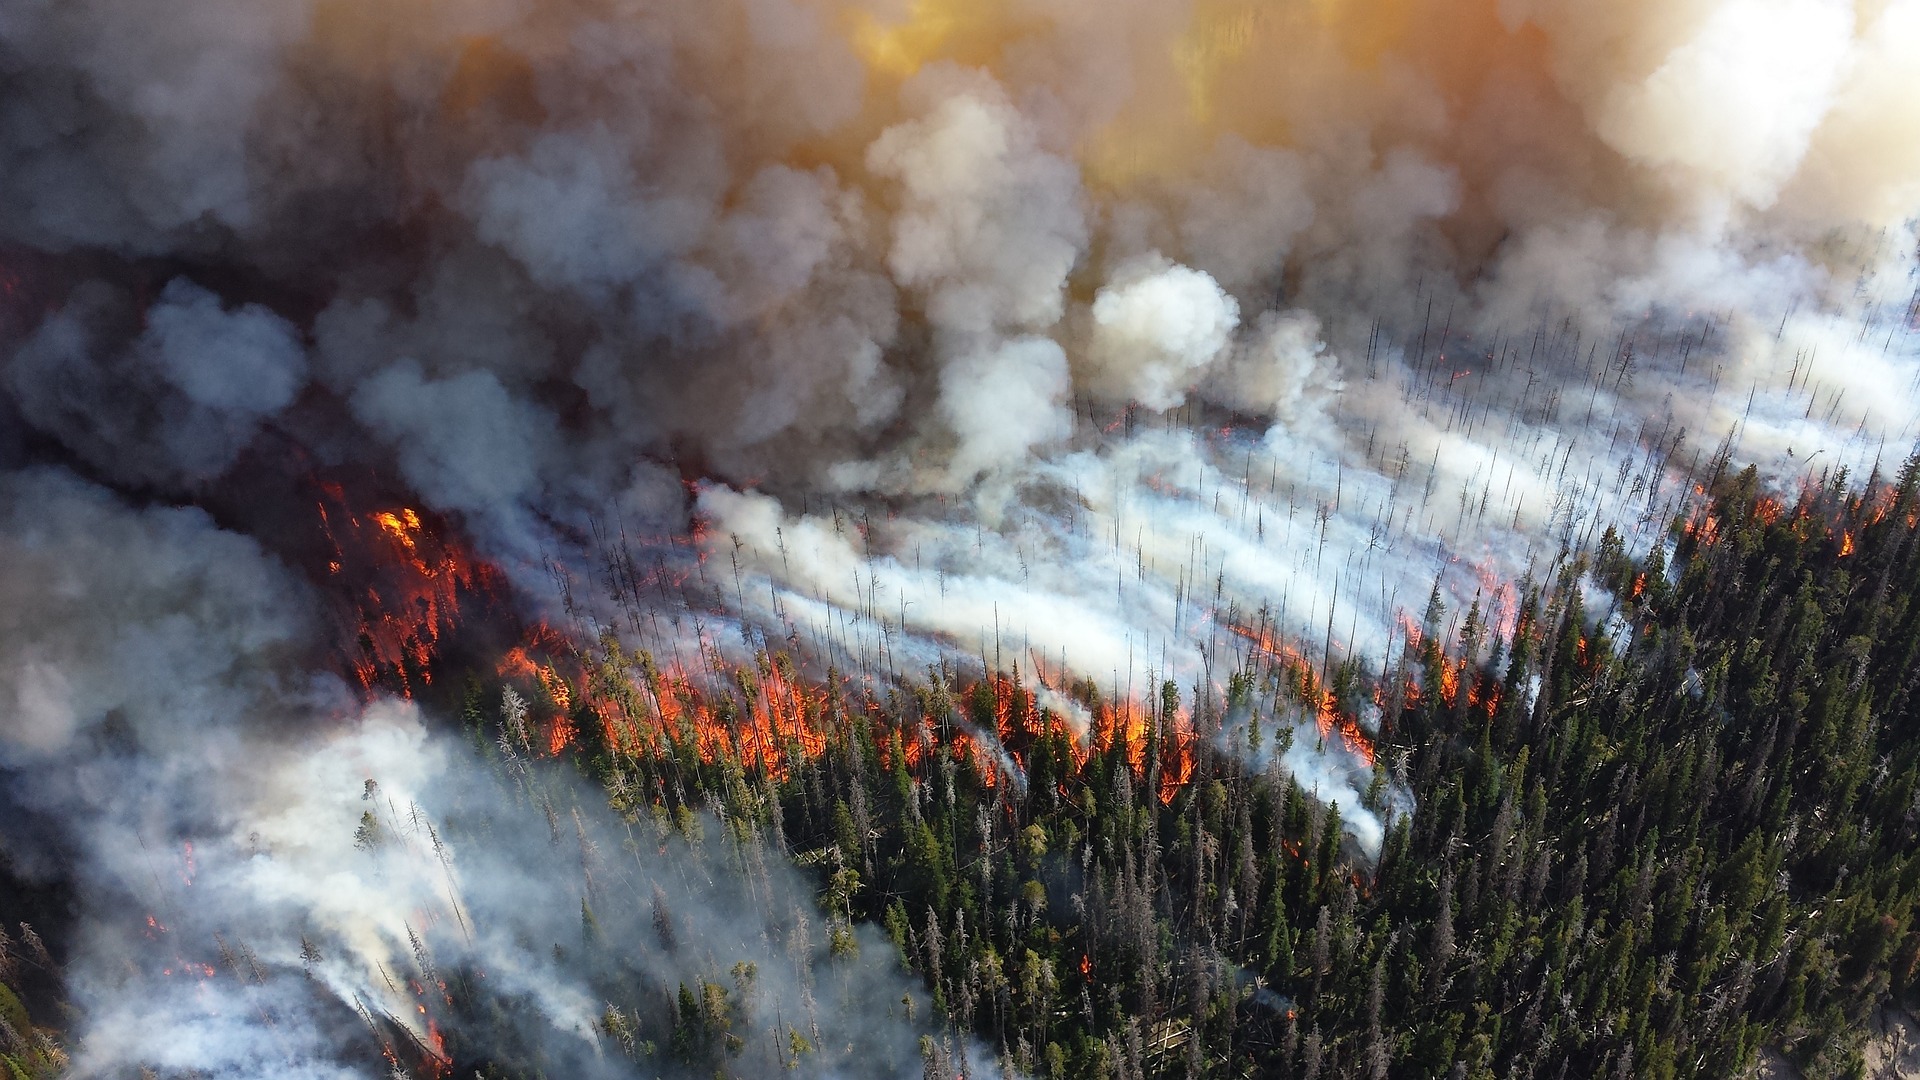 Incendios forestales mortales, contaminación acústica y disrupción en los ciclos de vida: Informe de la ONU identifica amenazas ambientales inminentes 